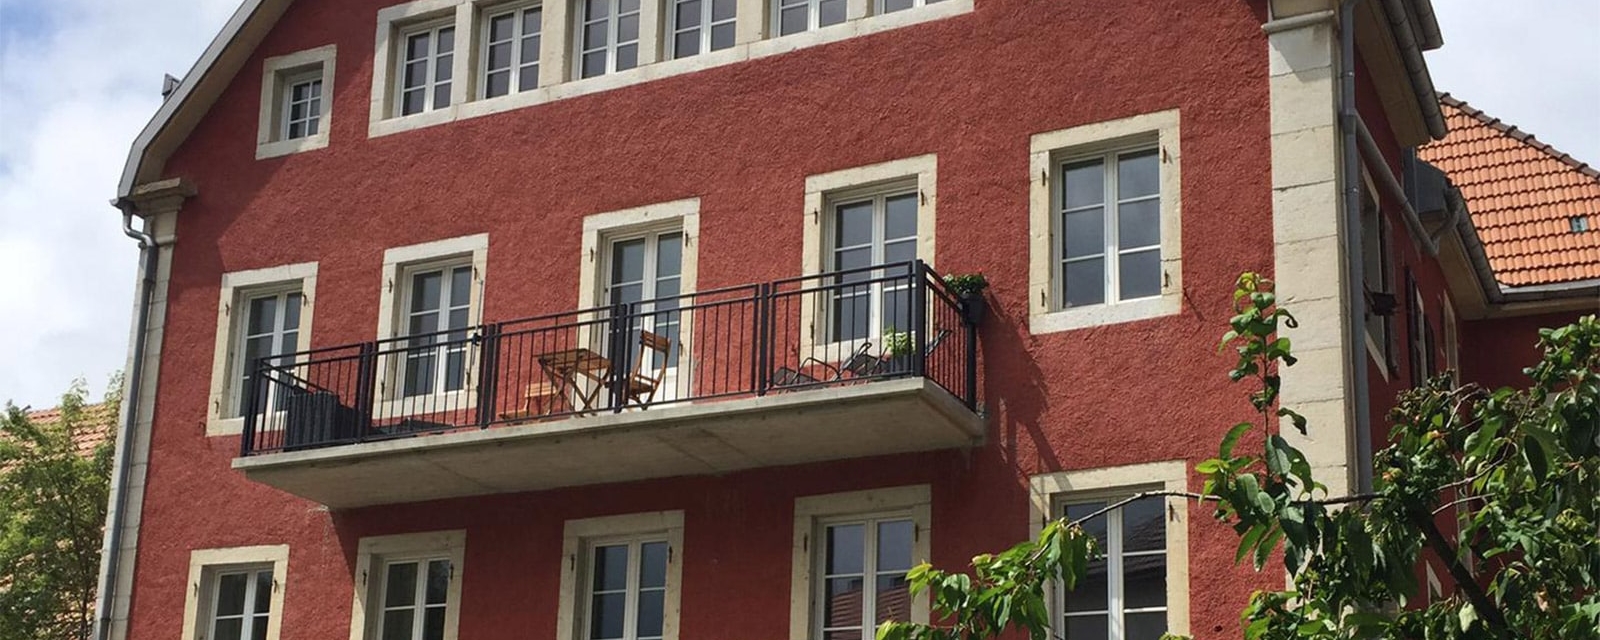 Patrimoine au balcon – Création de balcons en zone ville ancienne, La Chaux-de-Fonds